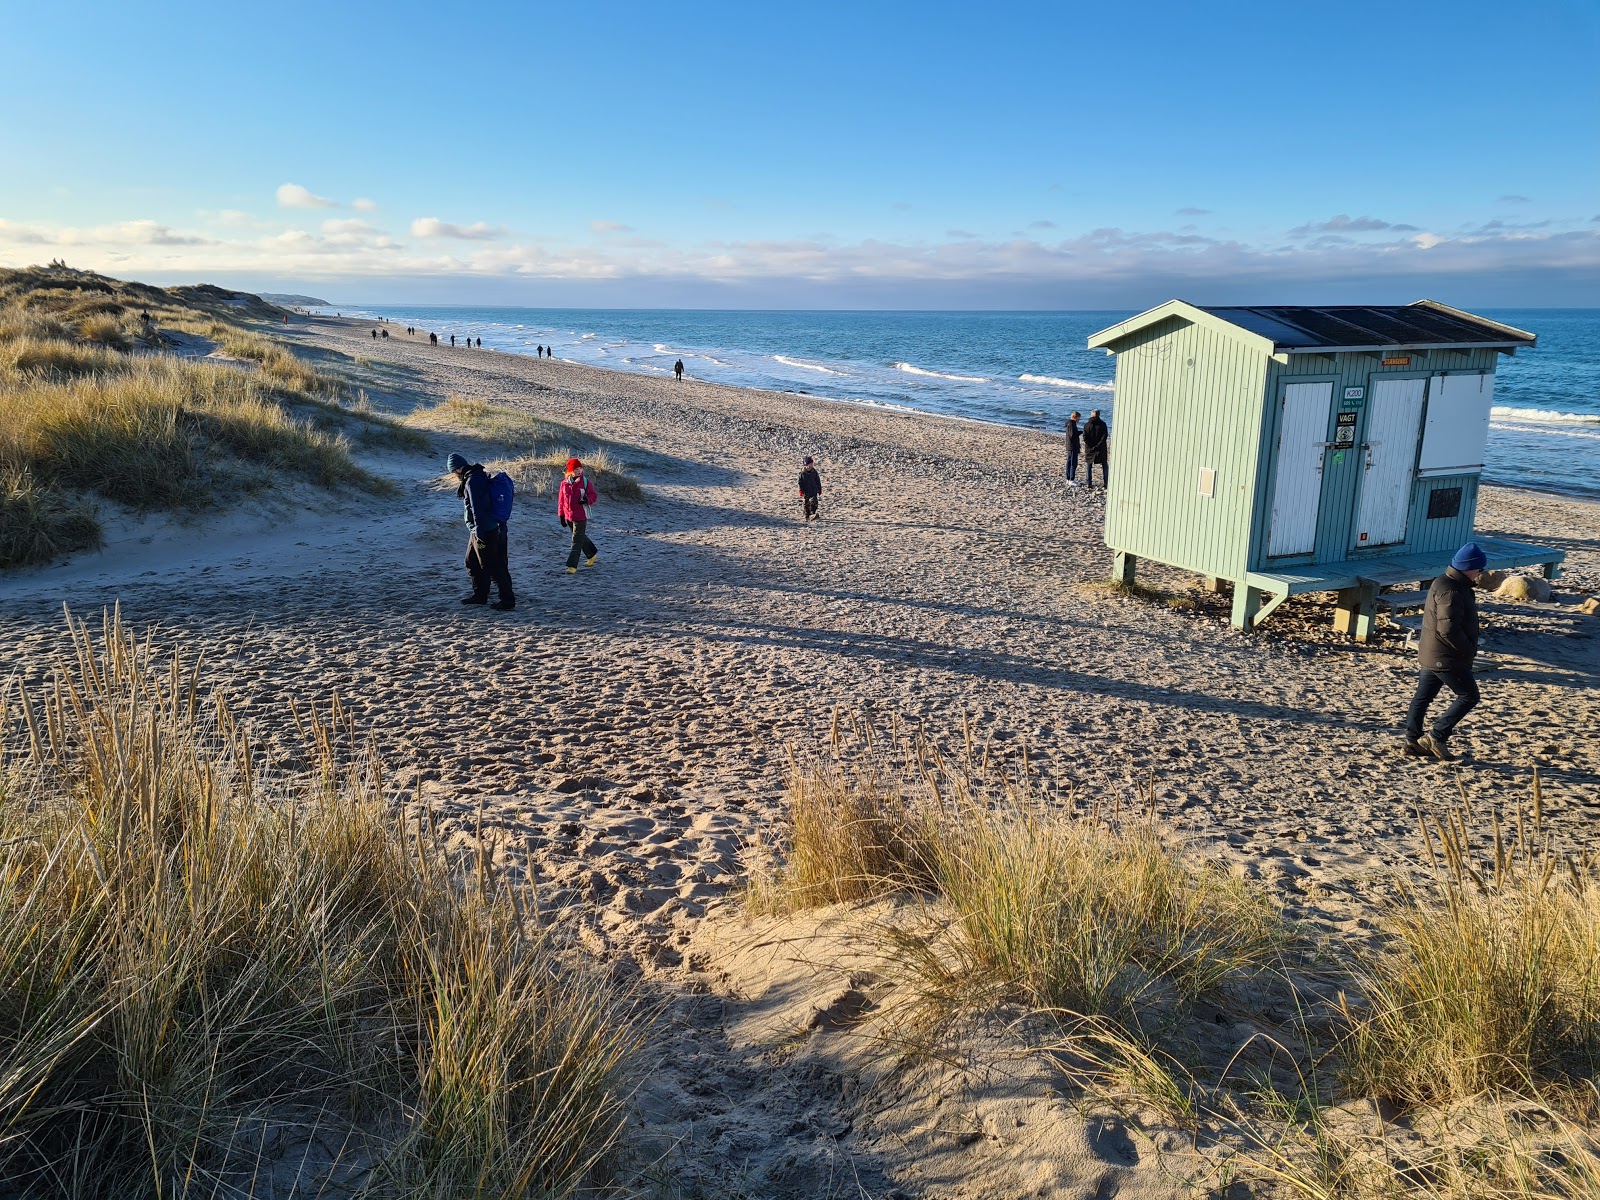 Photo de Stangehus Beach - endroit populaire parmi les connaisseurs de la détente